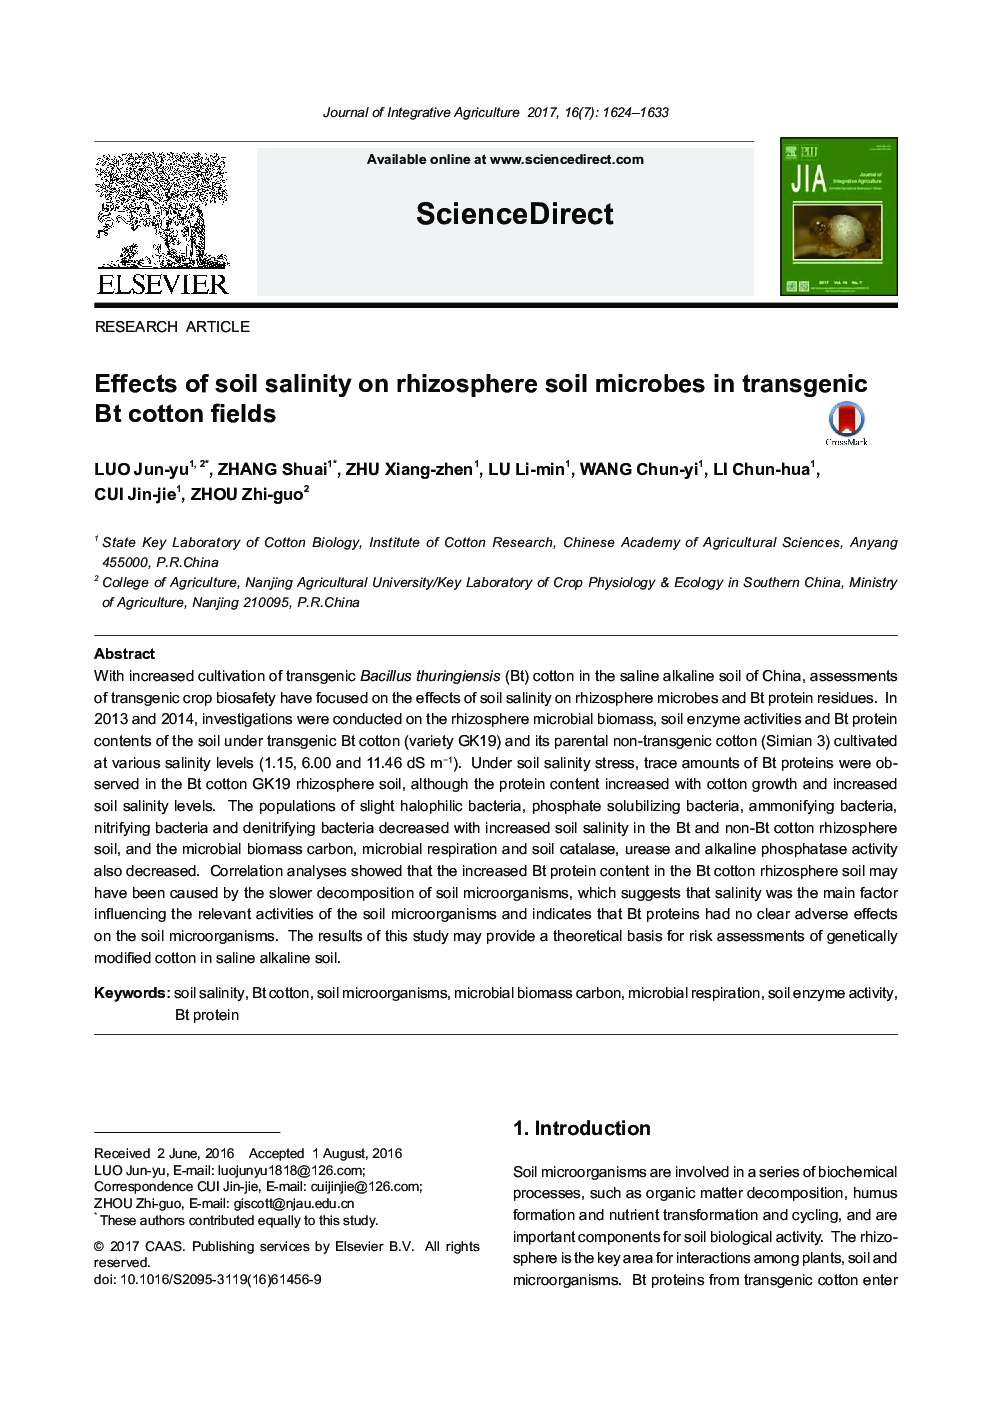 Effects of soil salinity on rhizosphere soil microbes in transgenic Bt cotton fields